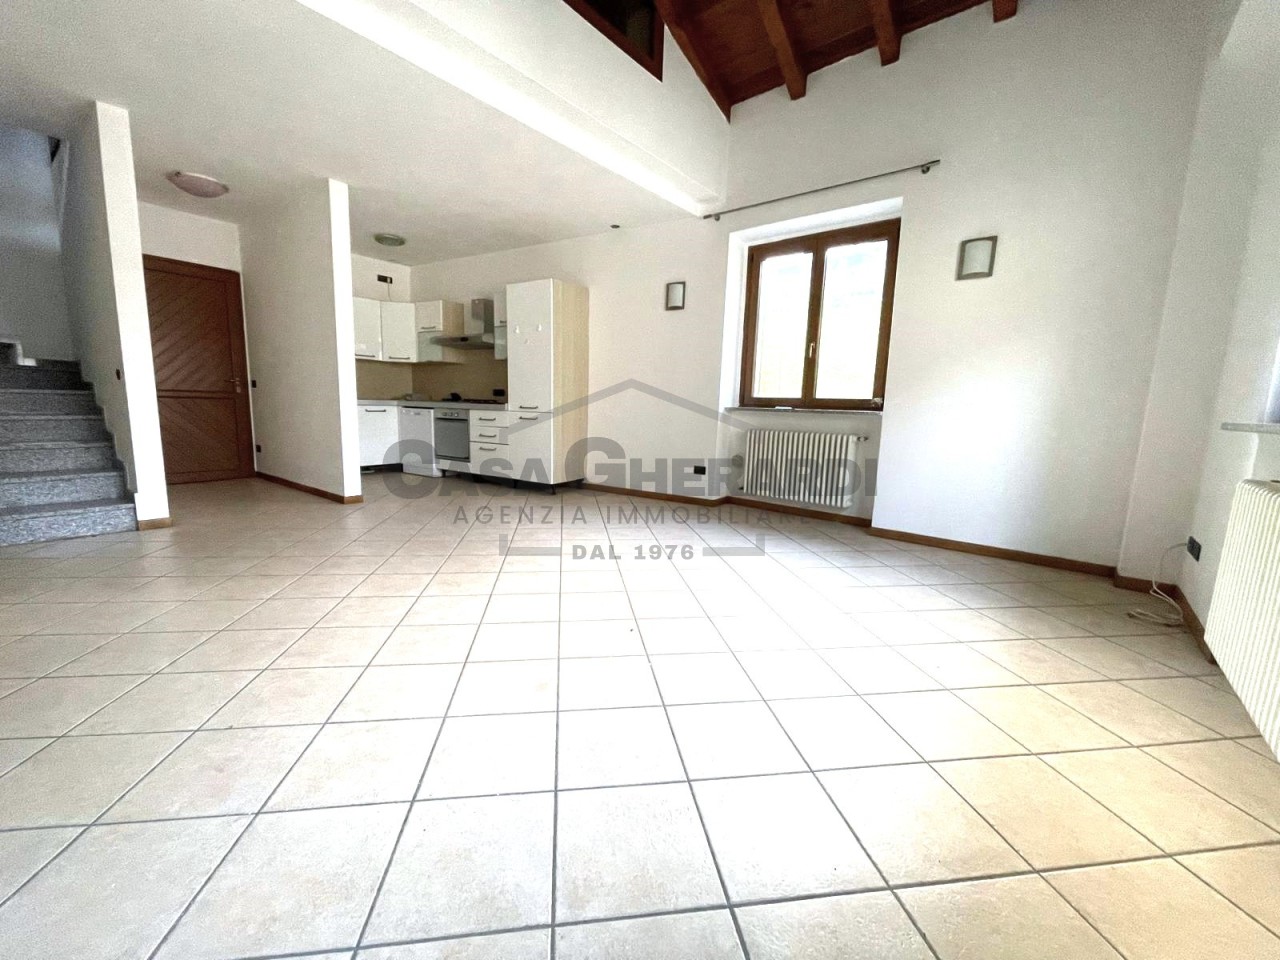 Appartamento in vendita a Palazzago, 3 locali, prezzo € 130.000 | PortaleAgenzieImmobiliari.it